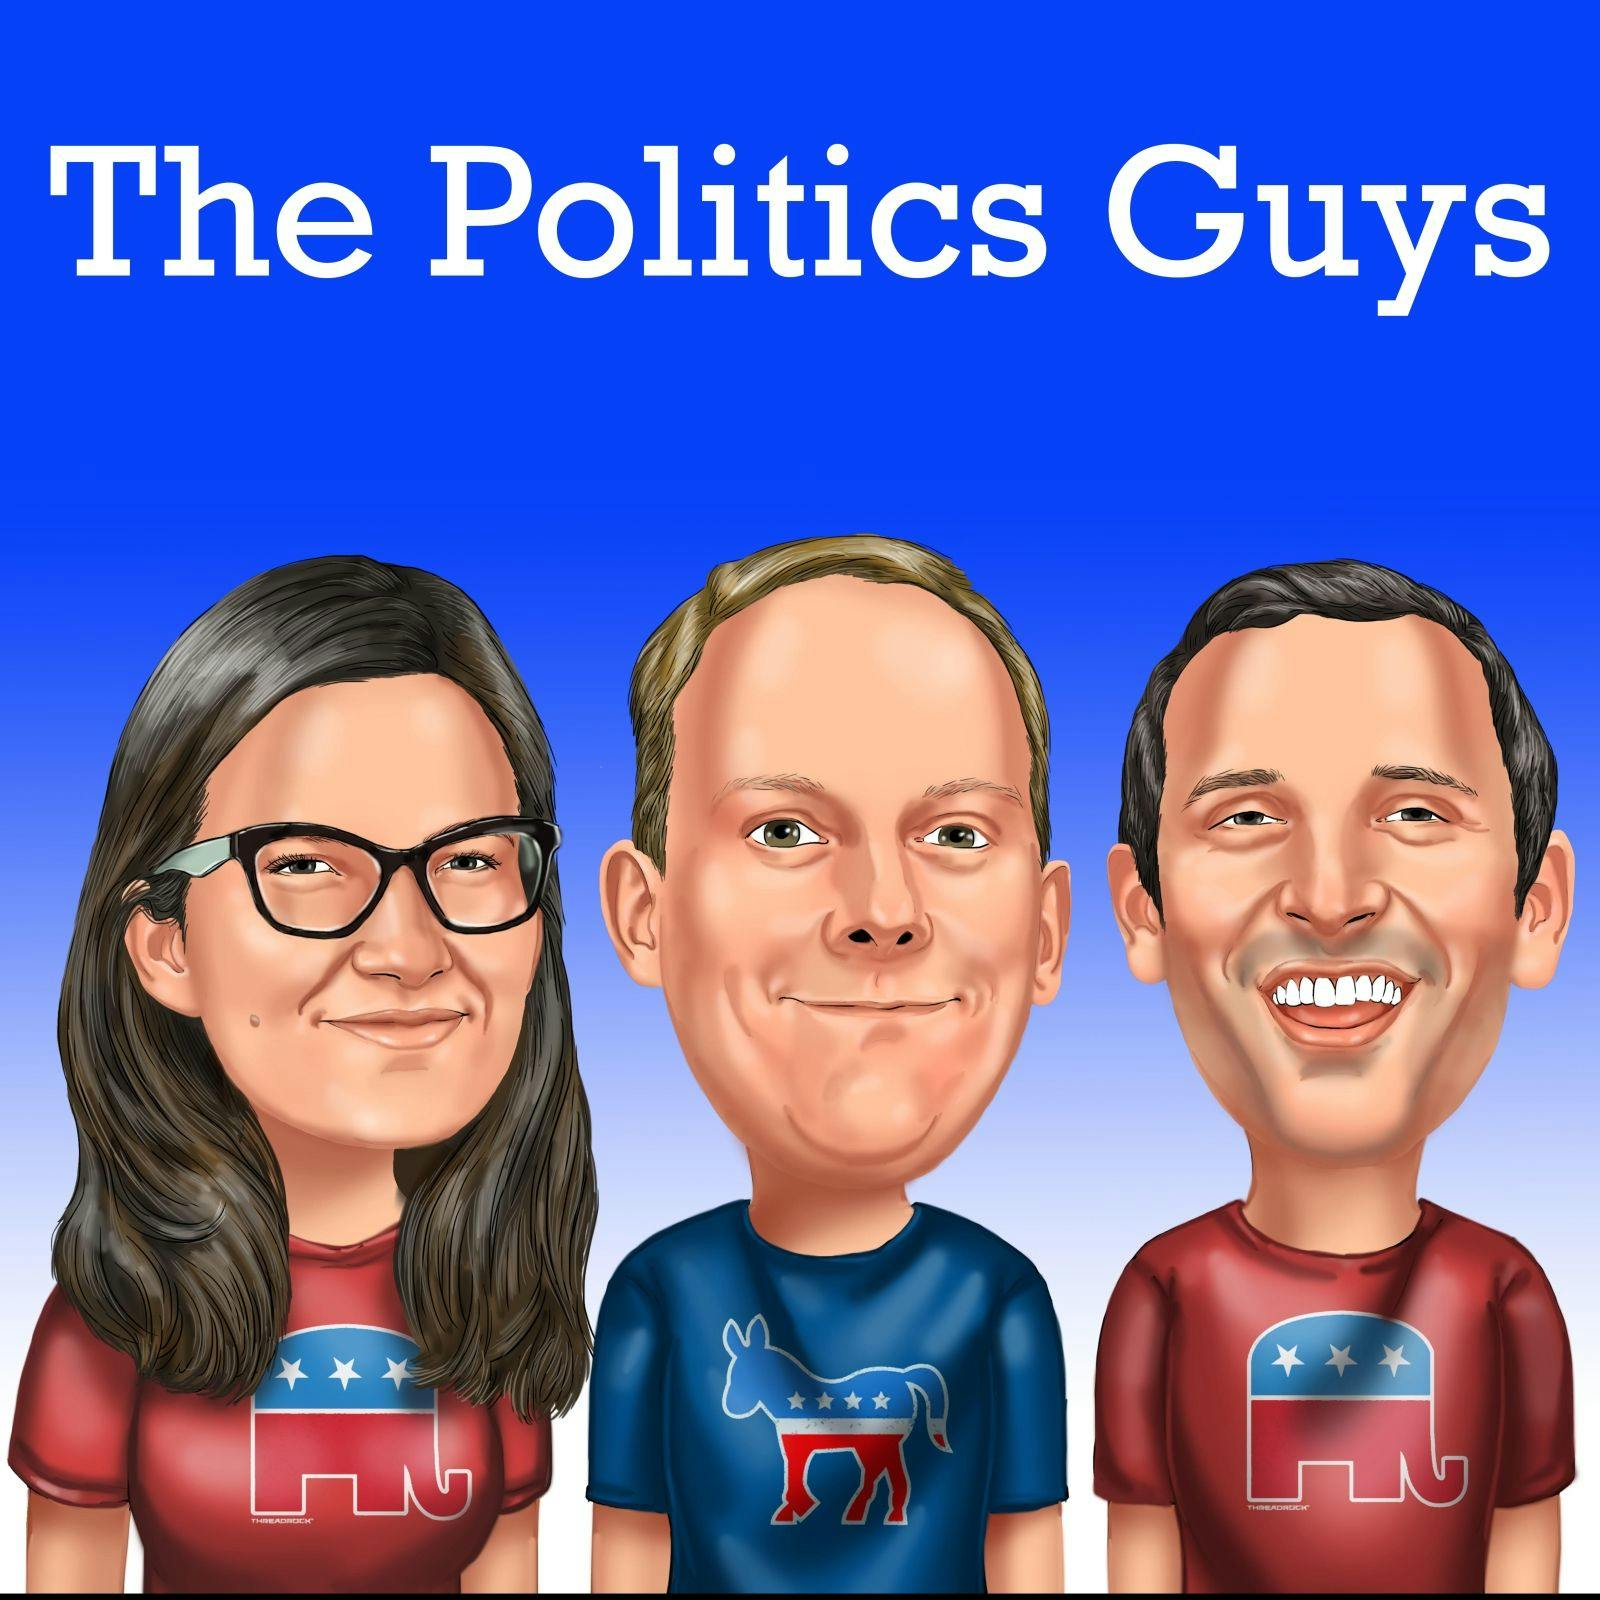 Senate Trial, Lev Parnas, USMCA, Warren v Sanders, iPhone Hacking